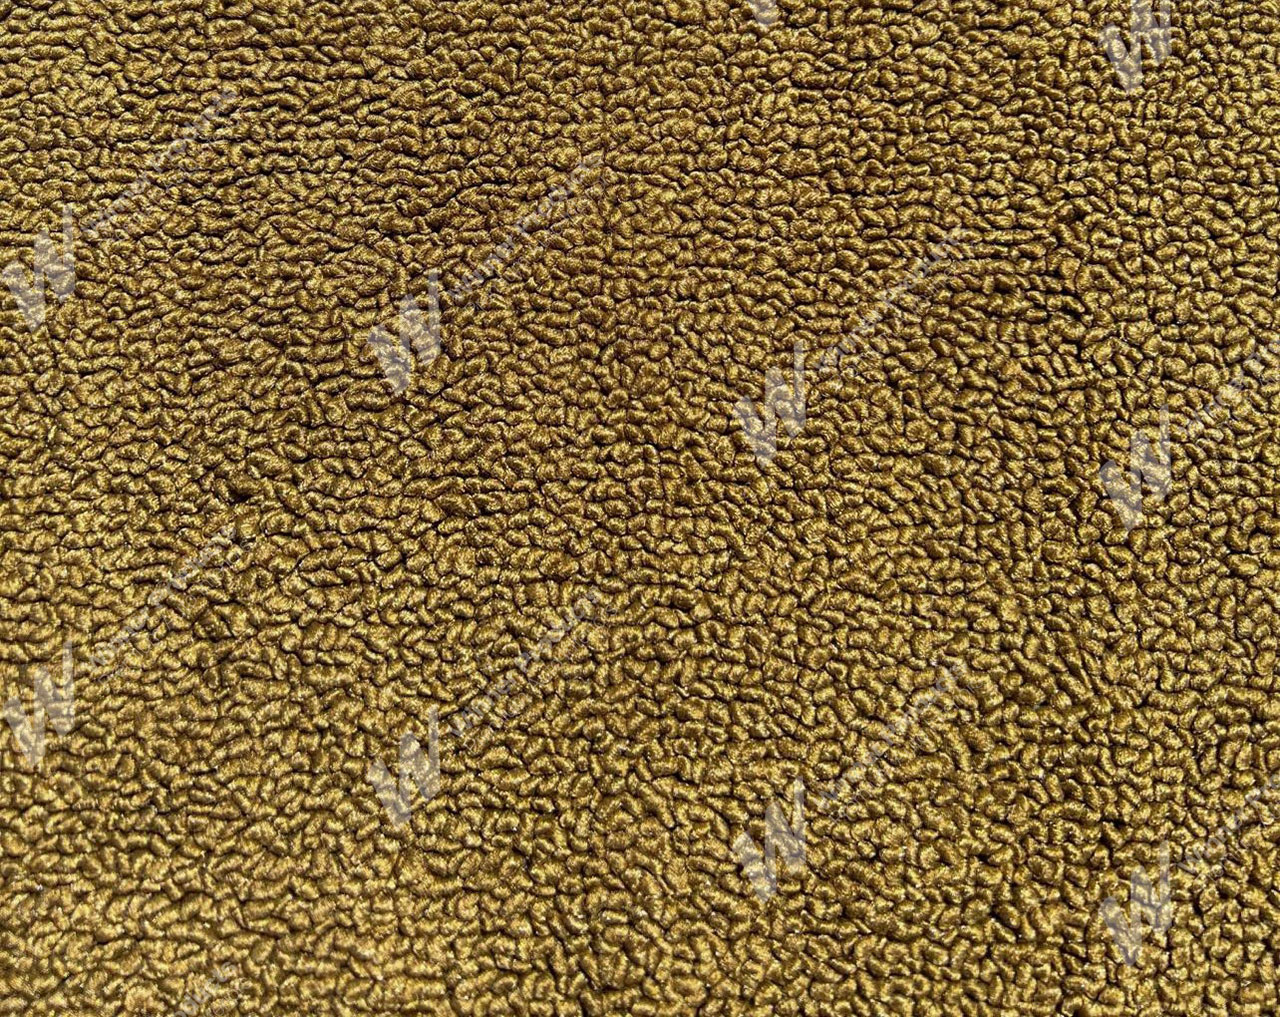 Holden Kingswood HG Kingswood Panel Van 11G Antique Gold & Castillion Weave Carpet (Image 1 of 1)